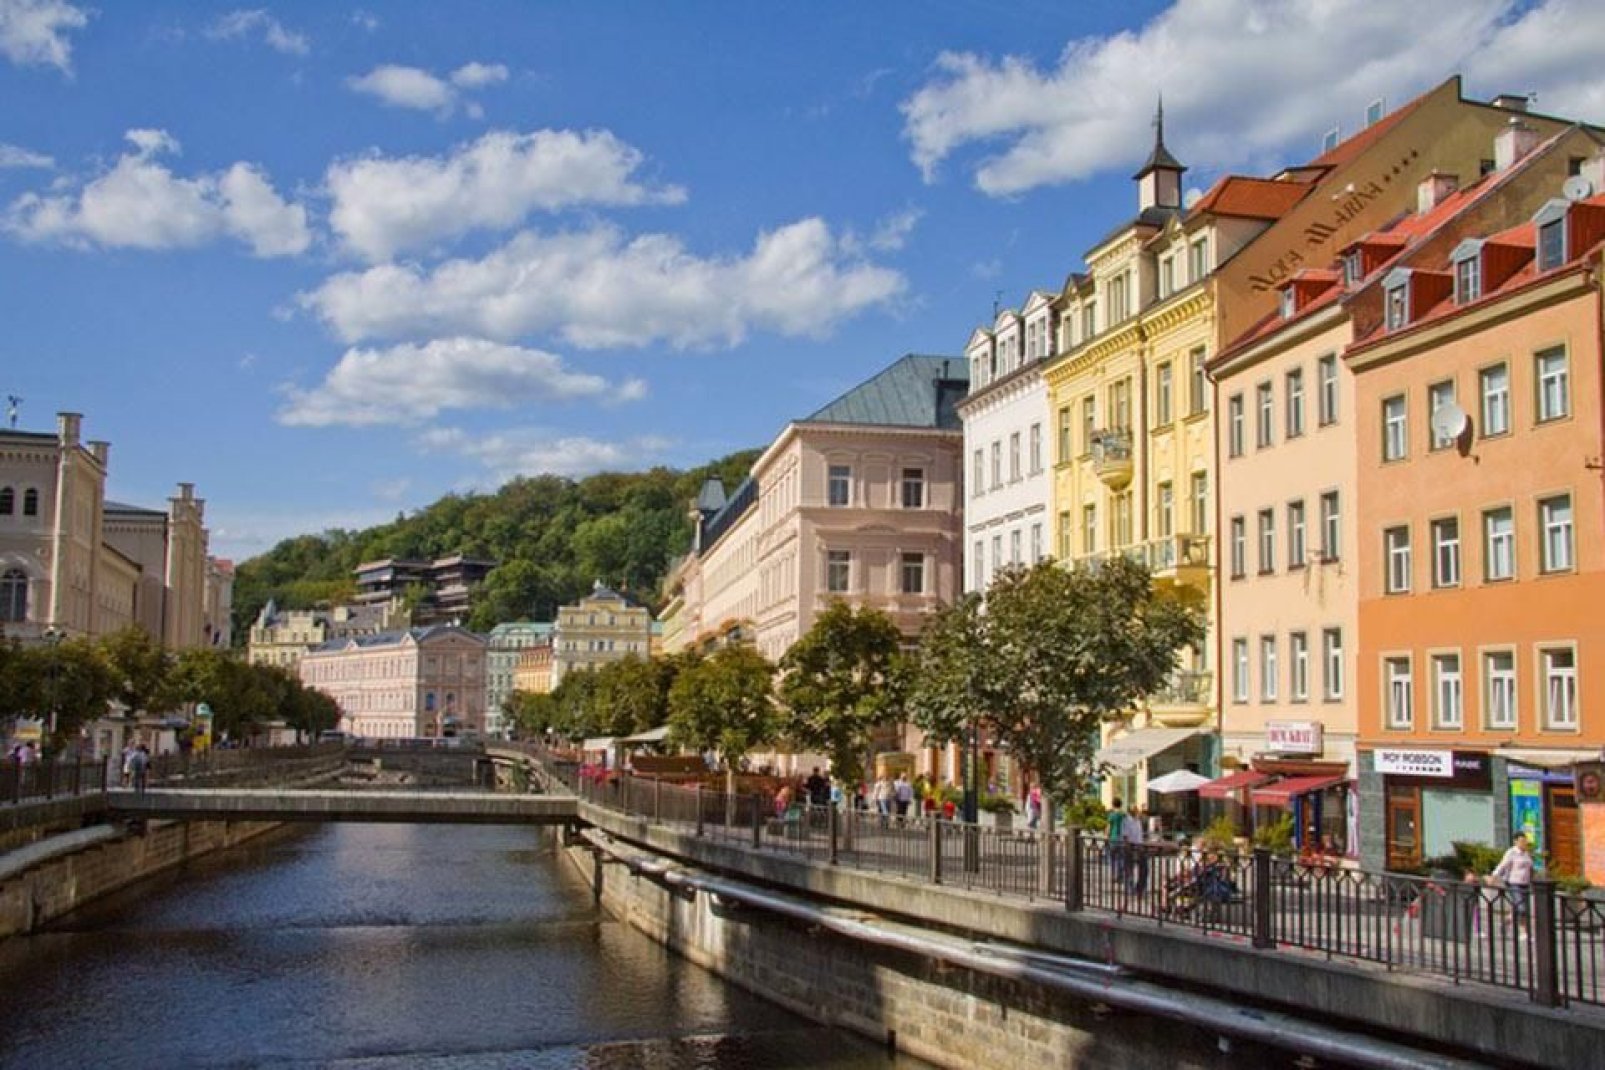 Die Stadt Karlovy Vary ist nach dem böhmischen König und Herrscher des Hl. Römischen Reichs Karl IV benannt, der die Stadt 1370 gründete.